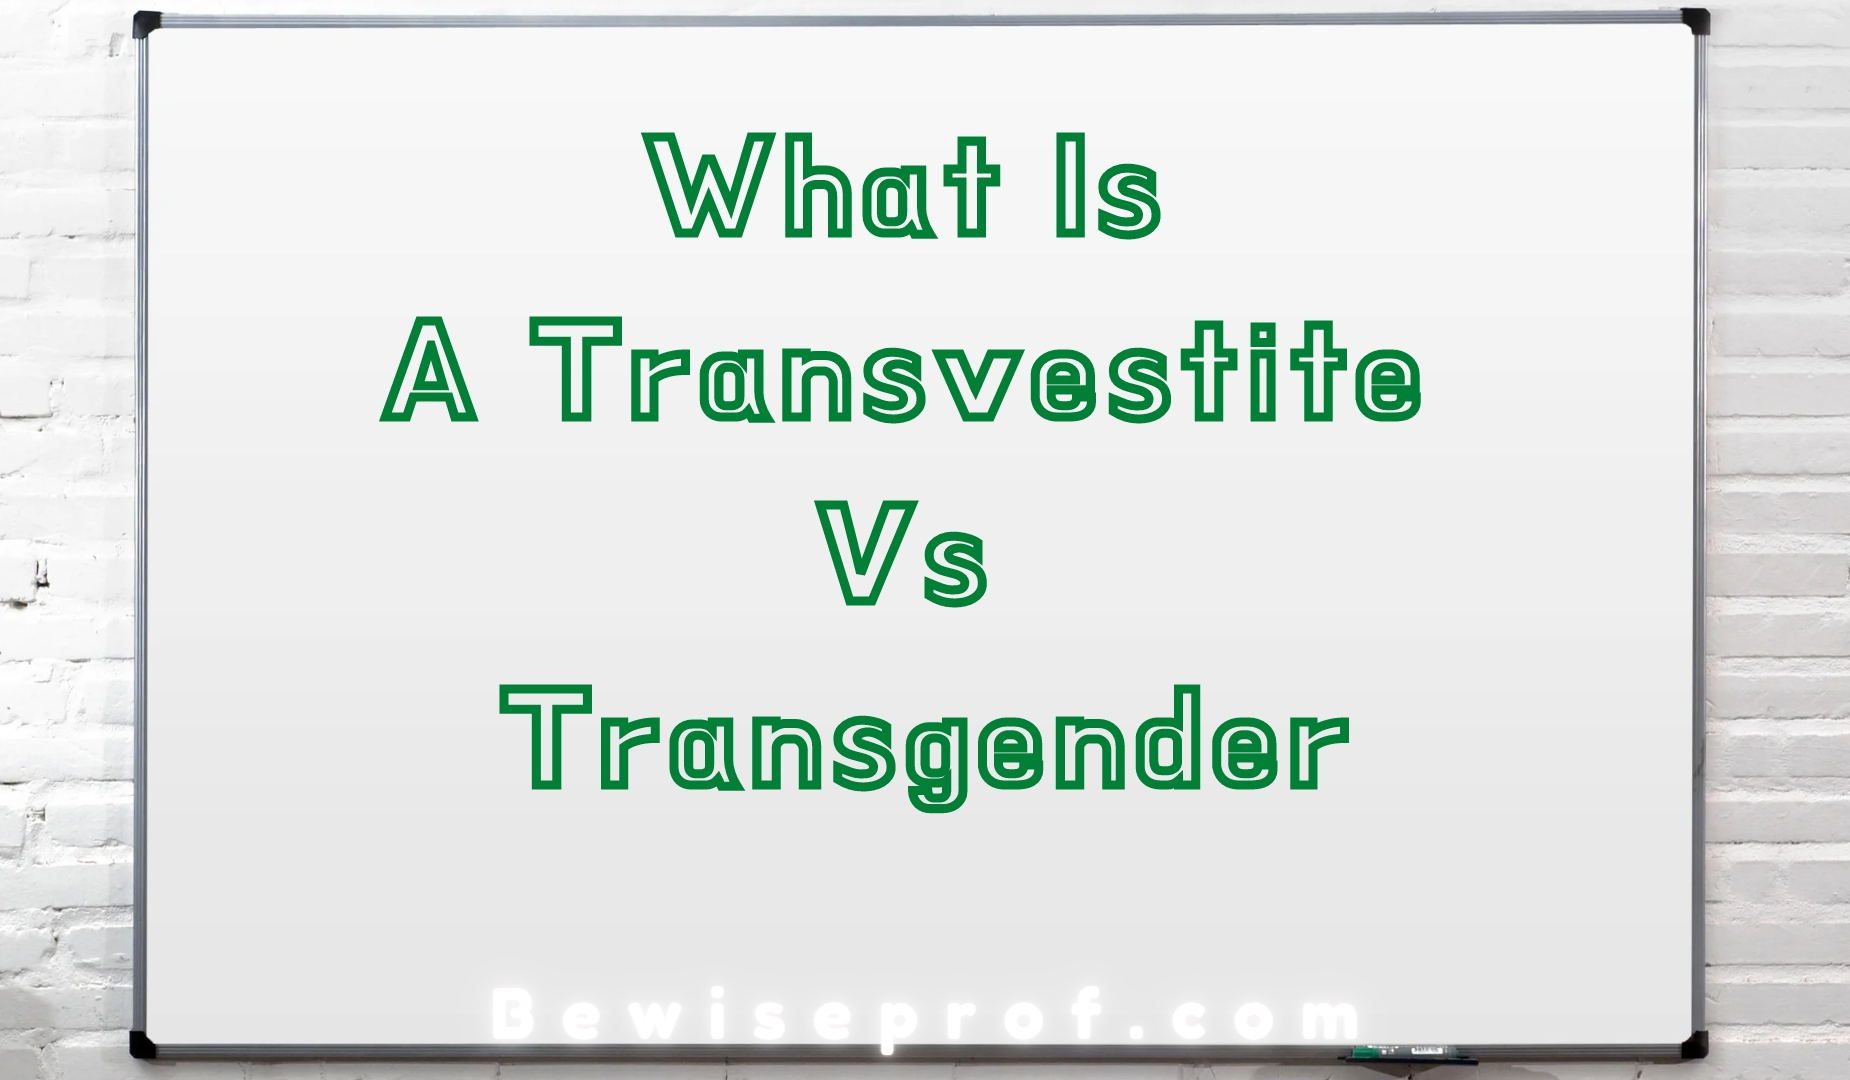 What Is A Transvestite Vs Transgender